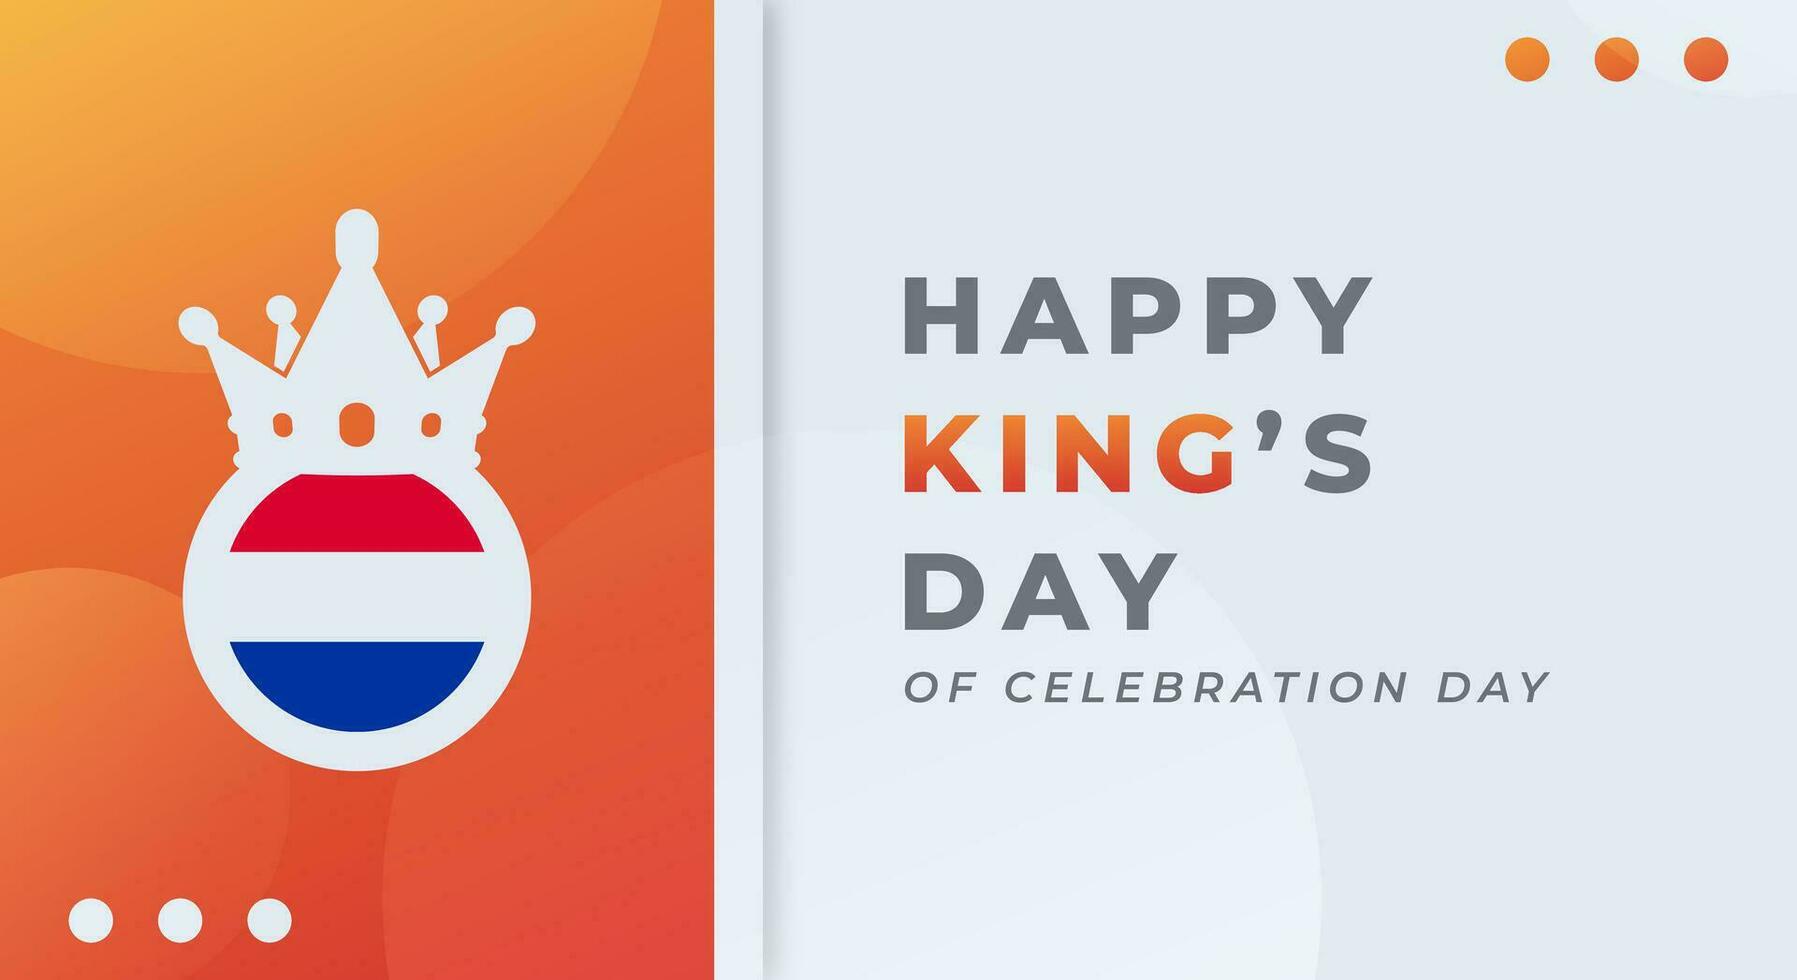 contento del rey día koningsdag celebracion vector diseño ilustración para fondo, póster, bandera, publicidad, saludo tarjeta